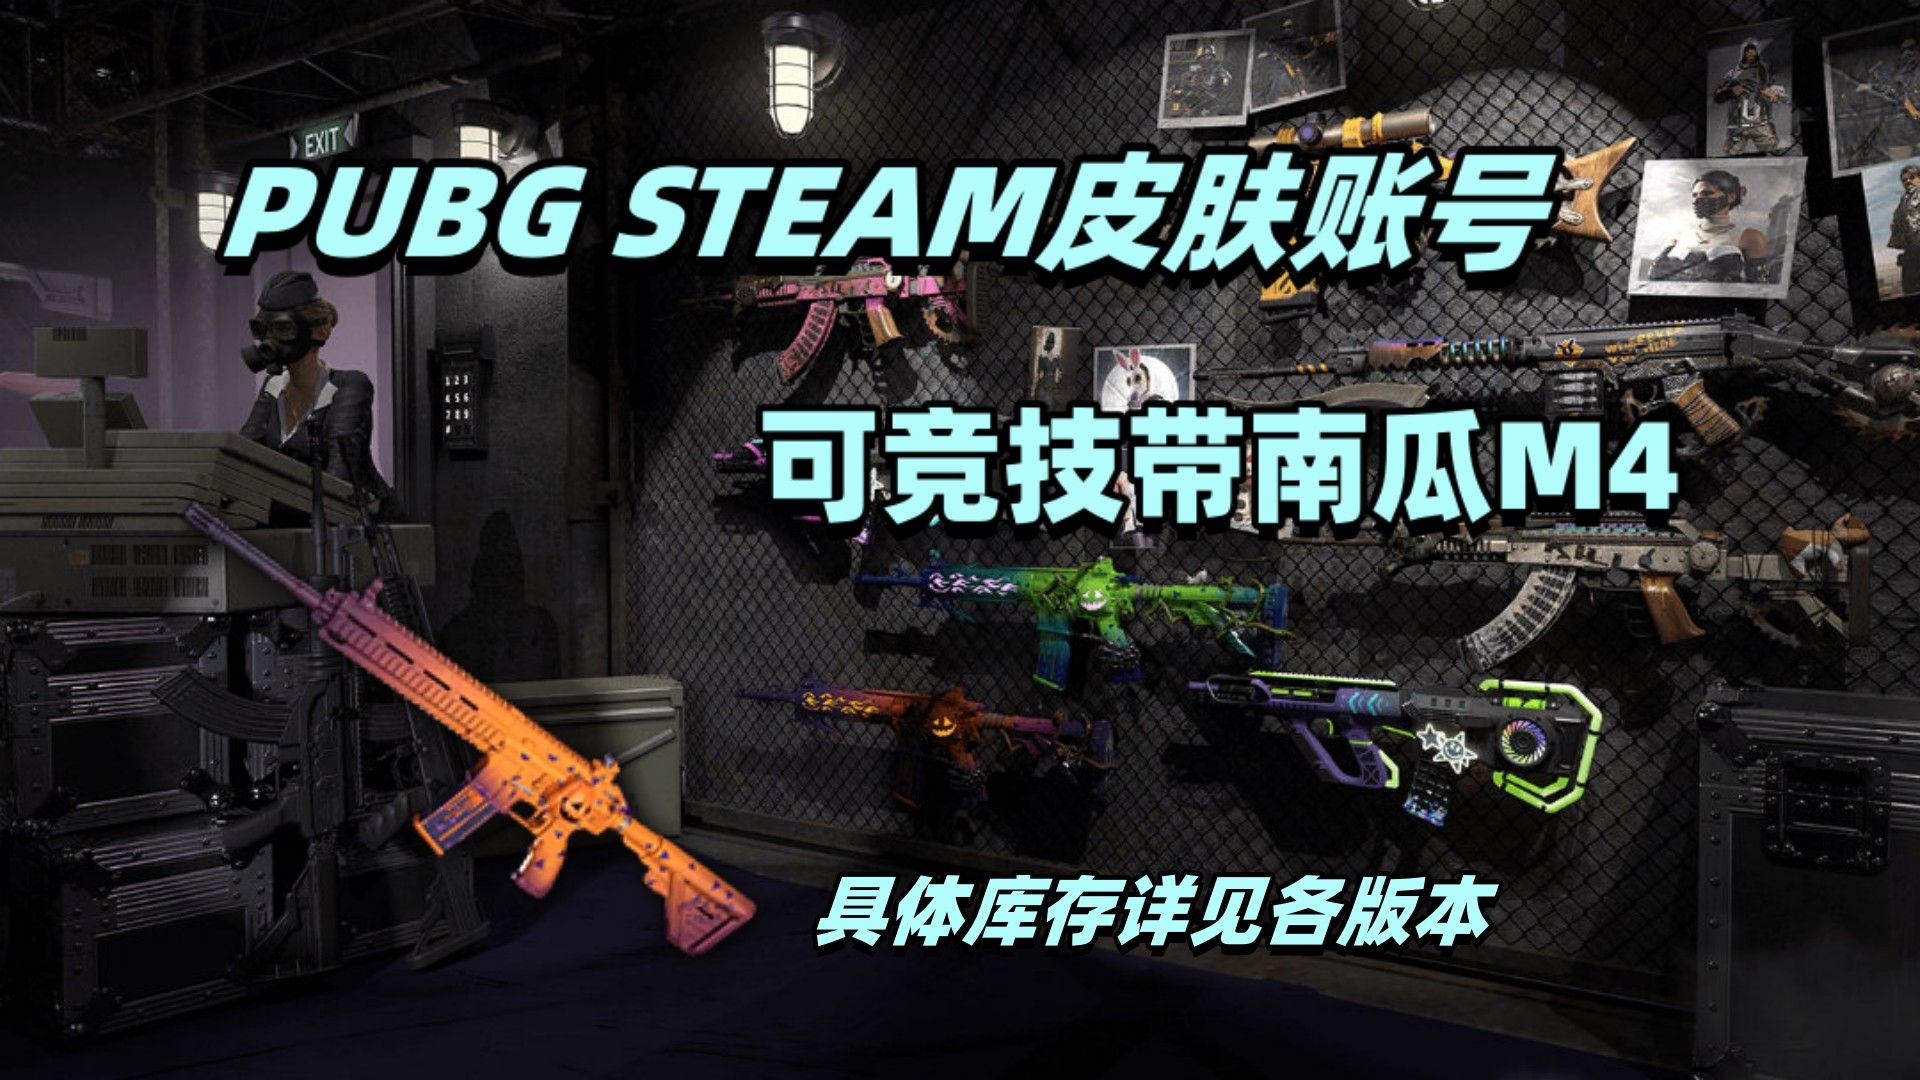 【可竞技】PUBG Steam豪华账号:成长计数器捣蛋鬼南瓜M4(具体详见库存图)